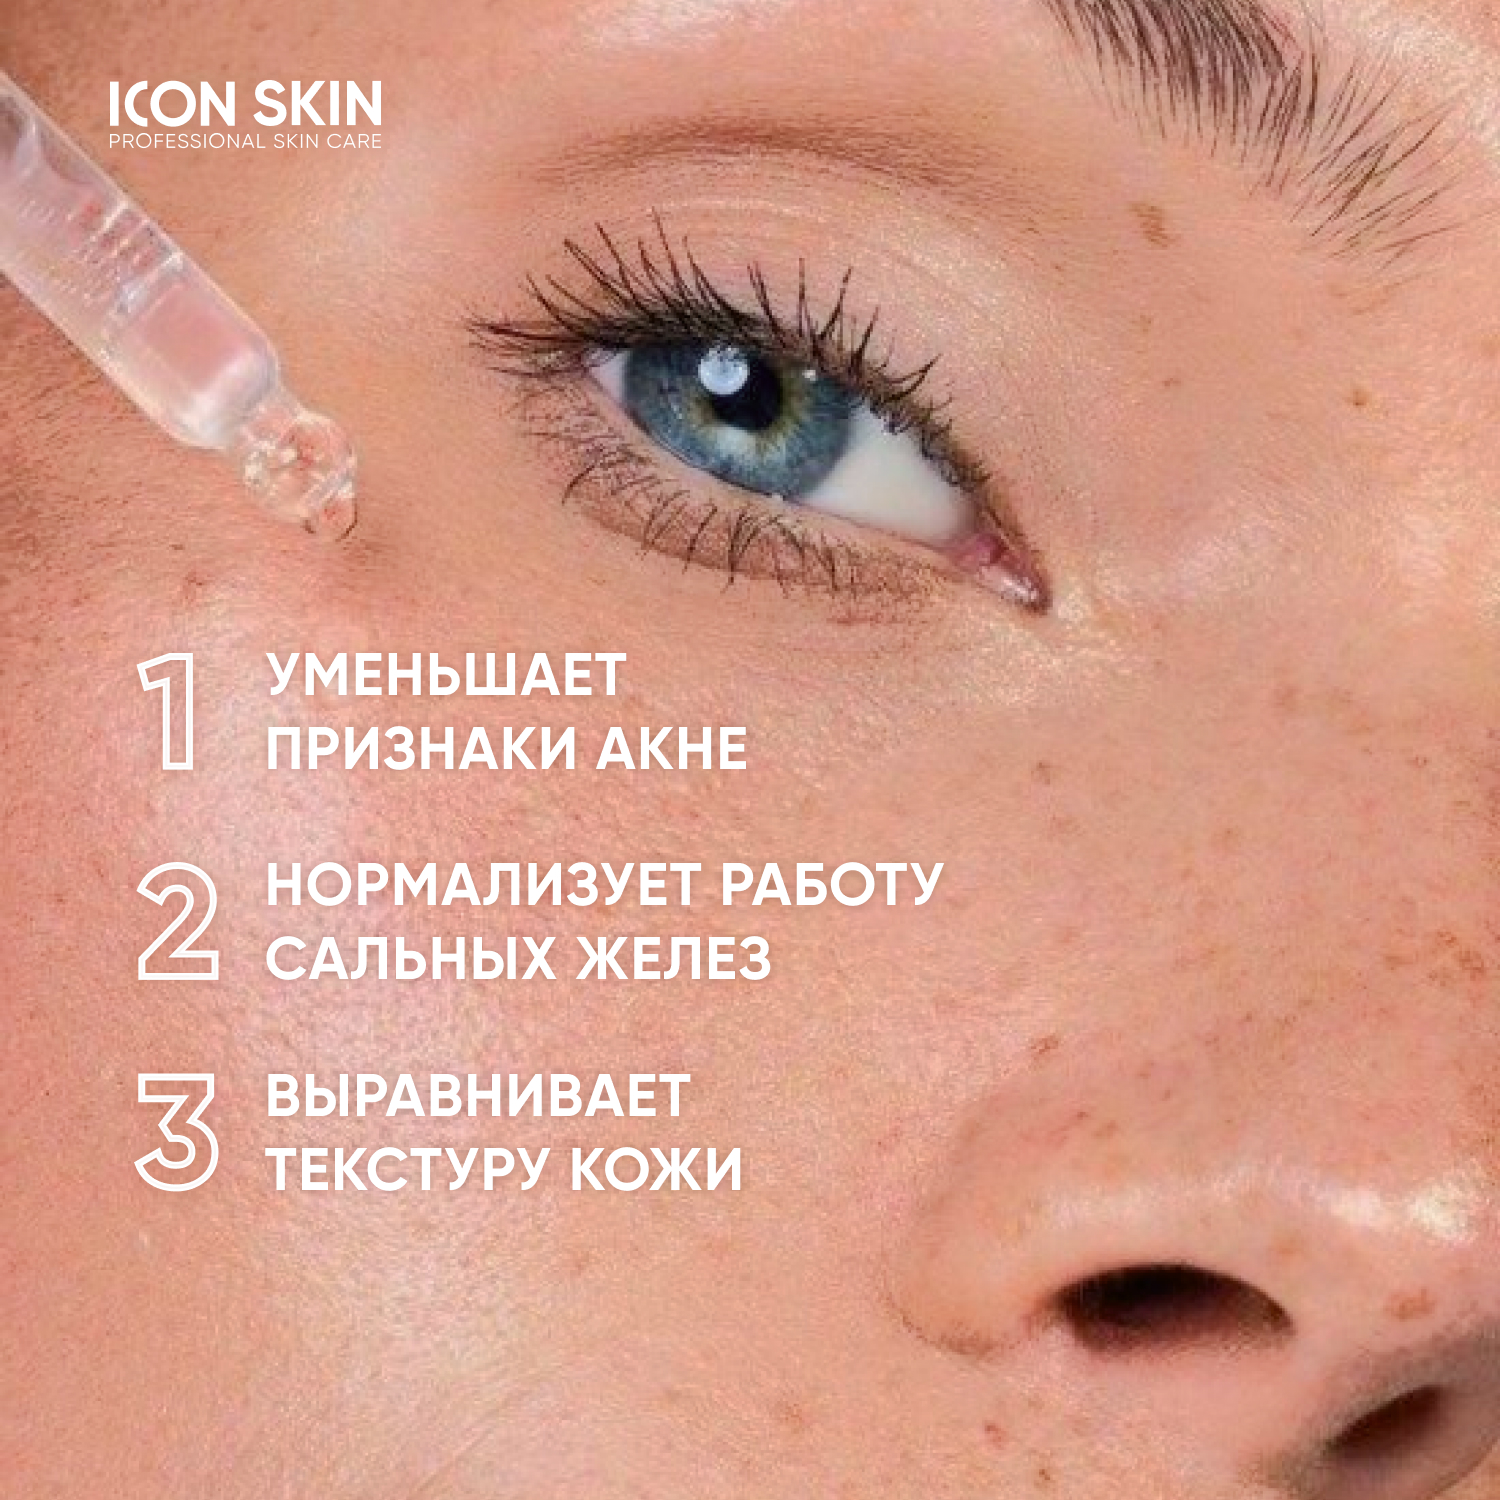 Пилинг ICON SKIN для проблемной кожи 11% 30 мл - фото 2